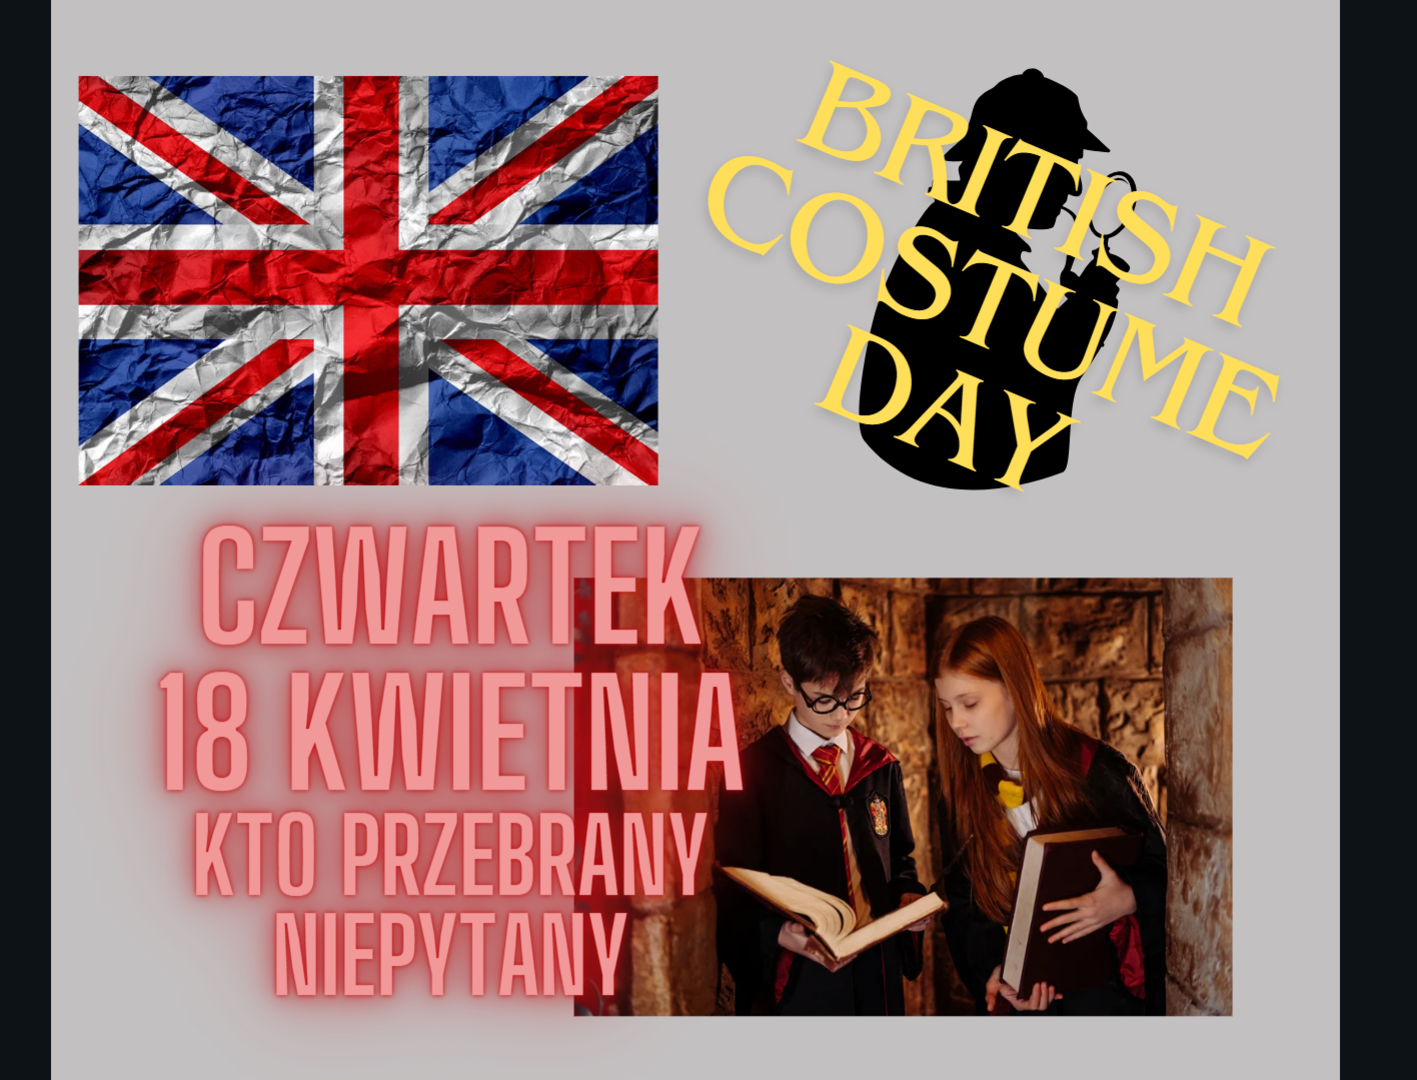 BRITISH COSTUME Day plakat.jpg.png